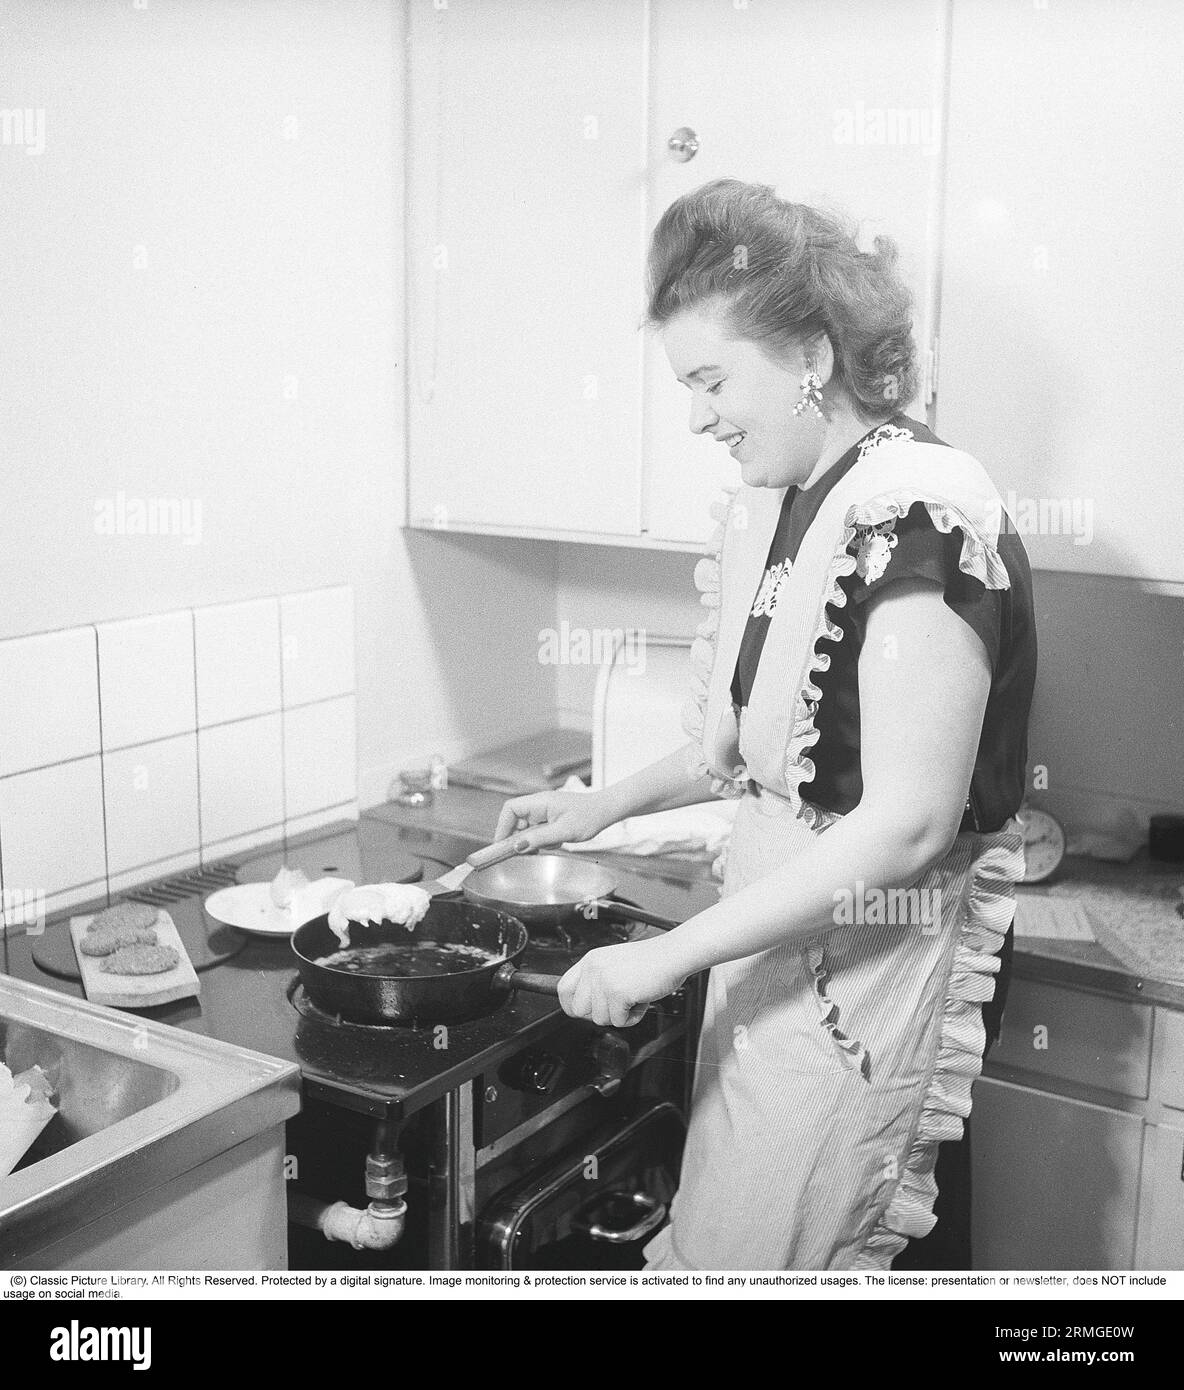 Dans la cuisine 1940s. Intérieur d'une cuisine et une jeune femme debout à la cuisinière de cuisine frire des œufs dans la poêle. Elle porte un tablier. Suède 1947. Kristoffersson réf. AB3-2 Banque D'Images